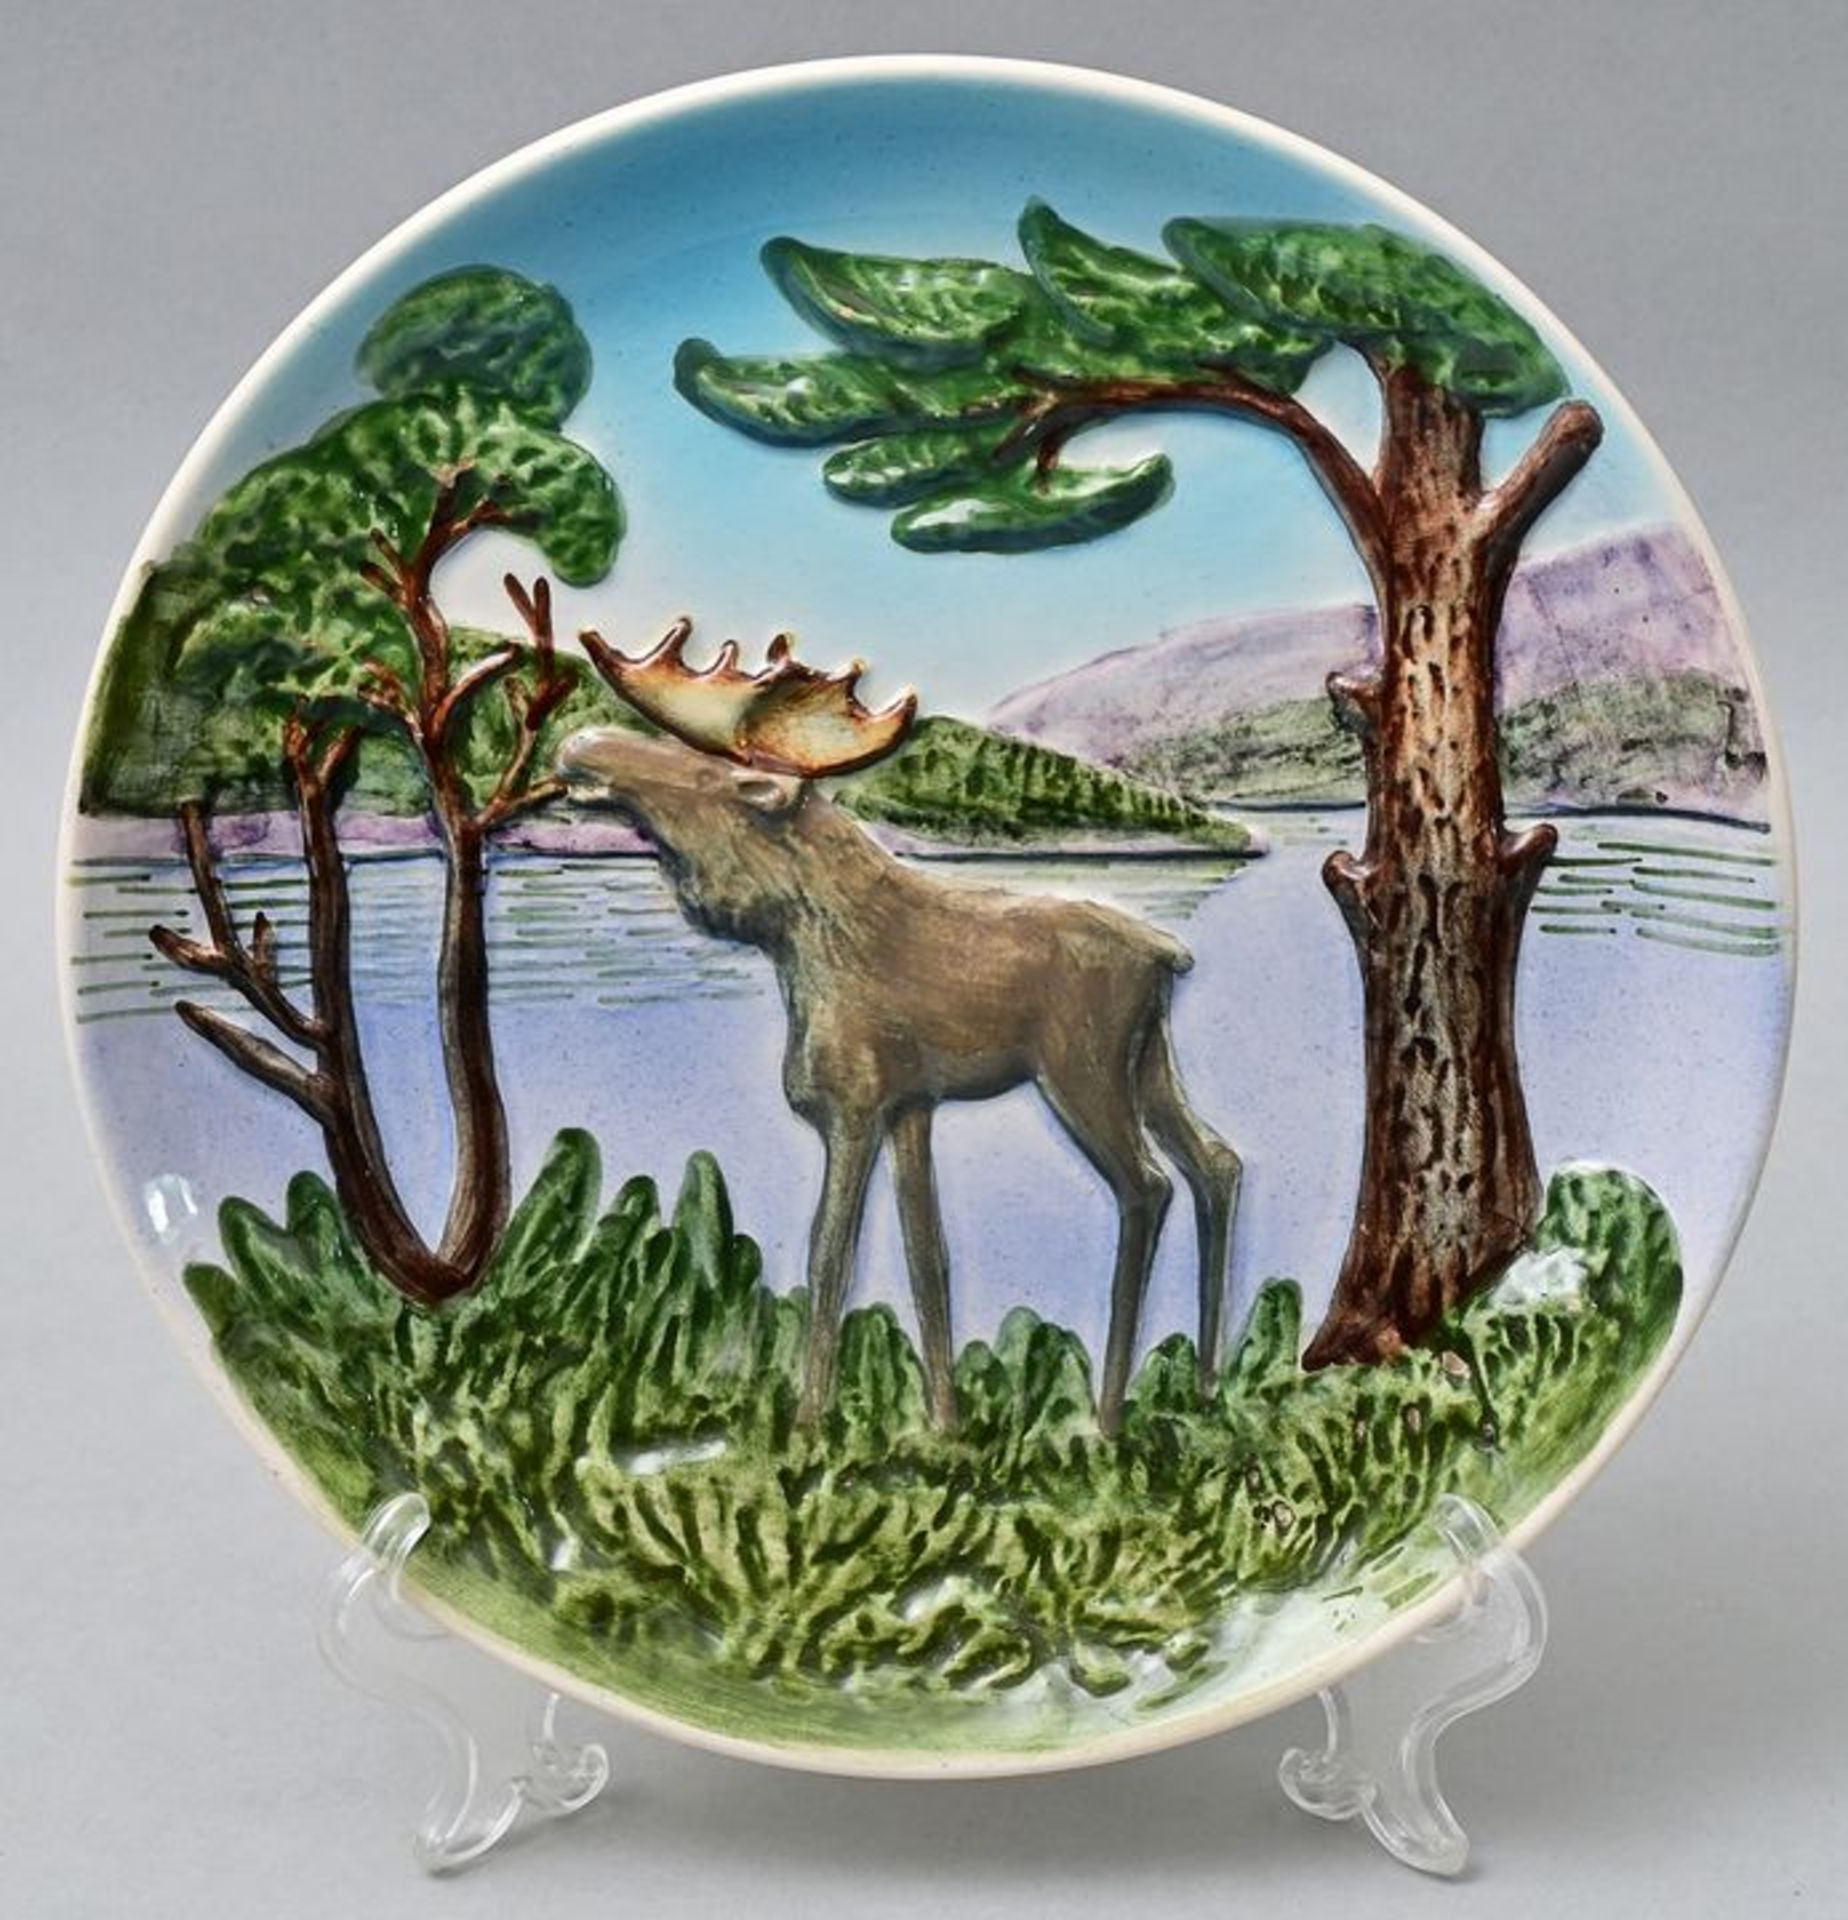 Teller, Keramik Elch / wall plate